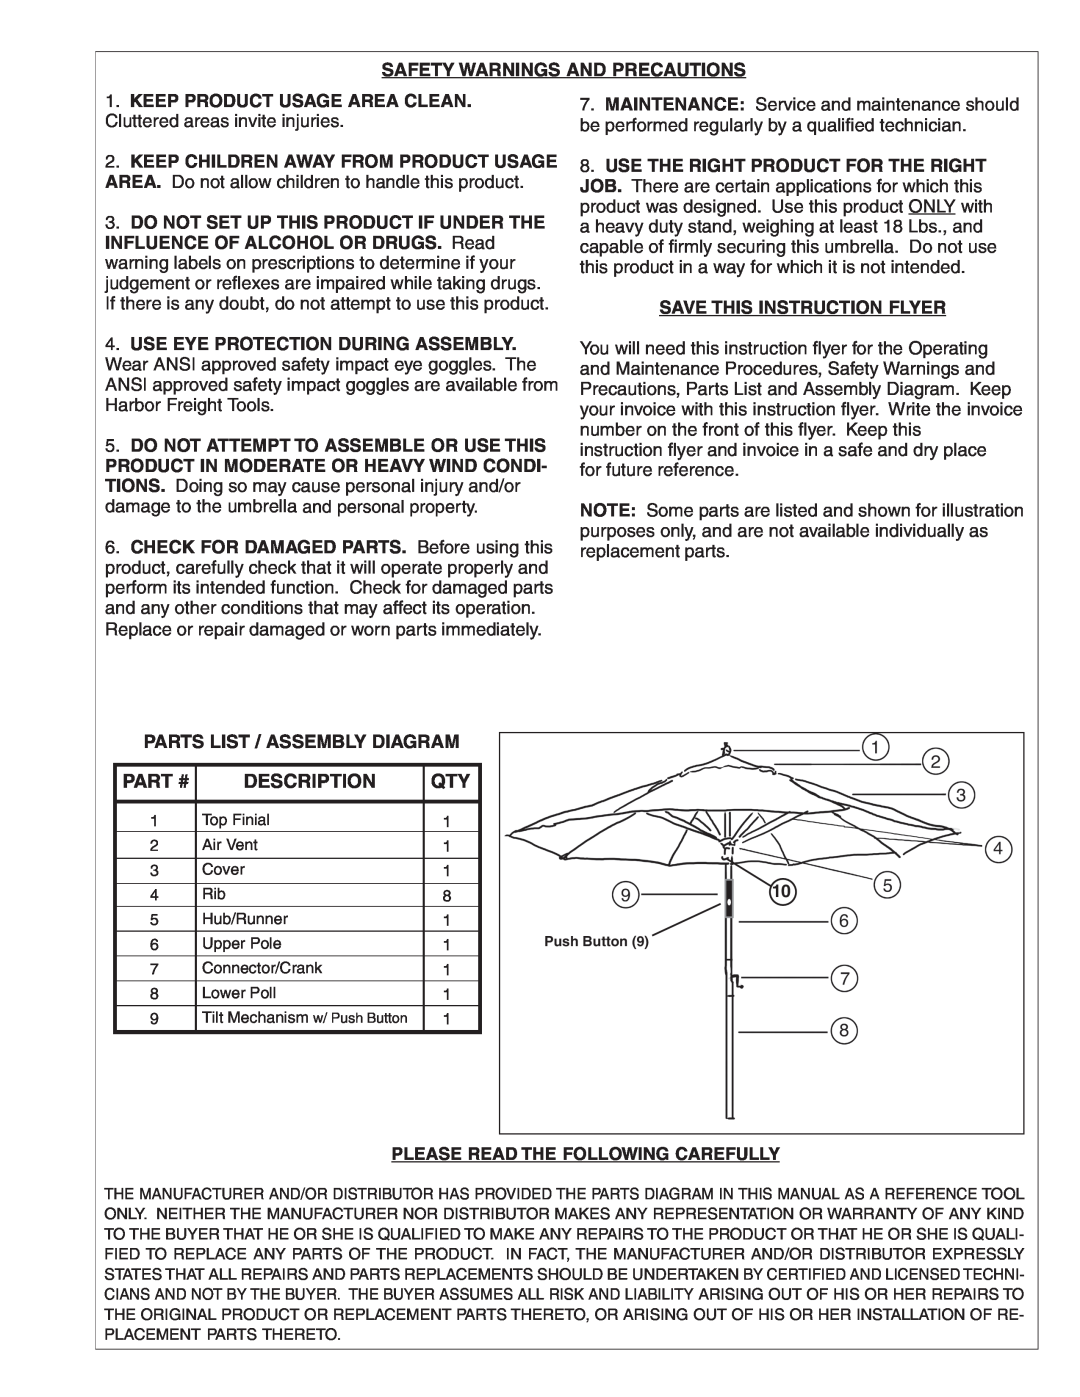 Harbor Freight Tools 93660 instruction sheet Part #, Description 